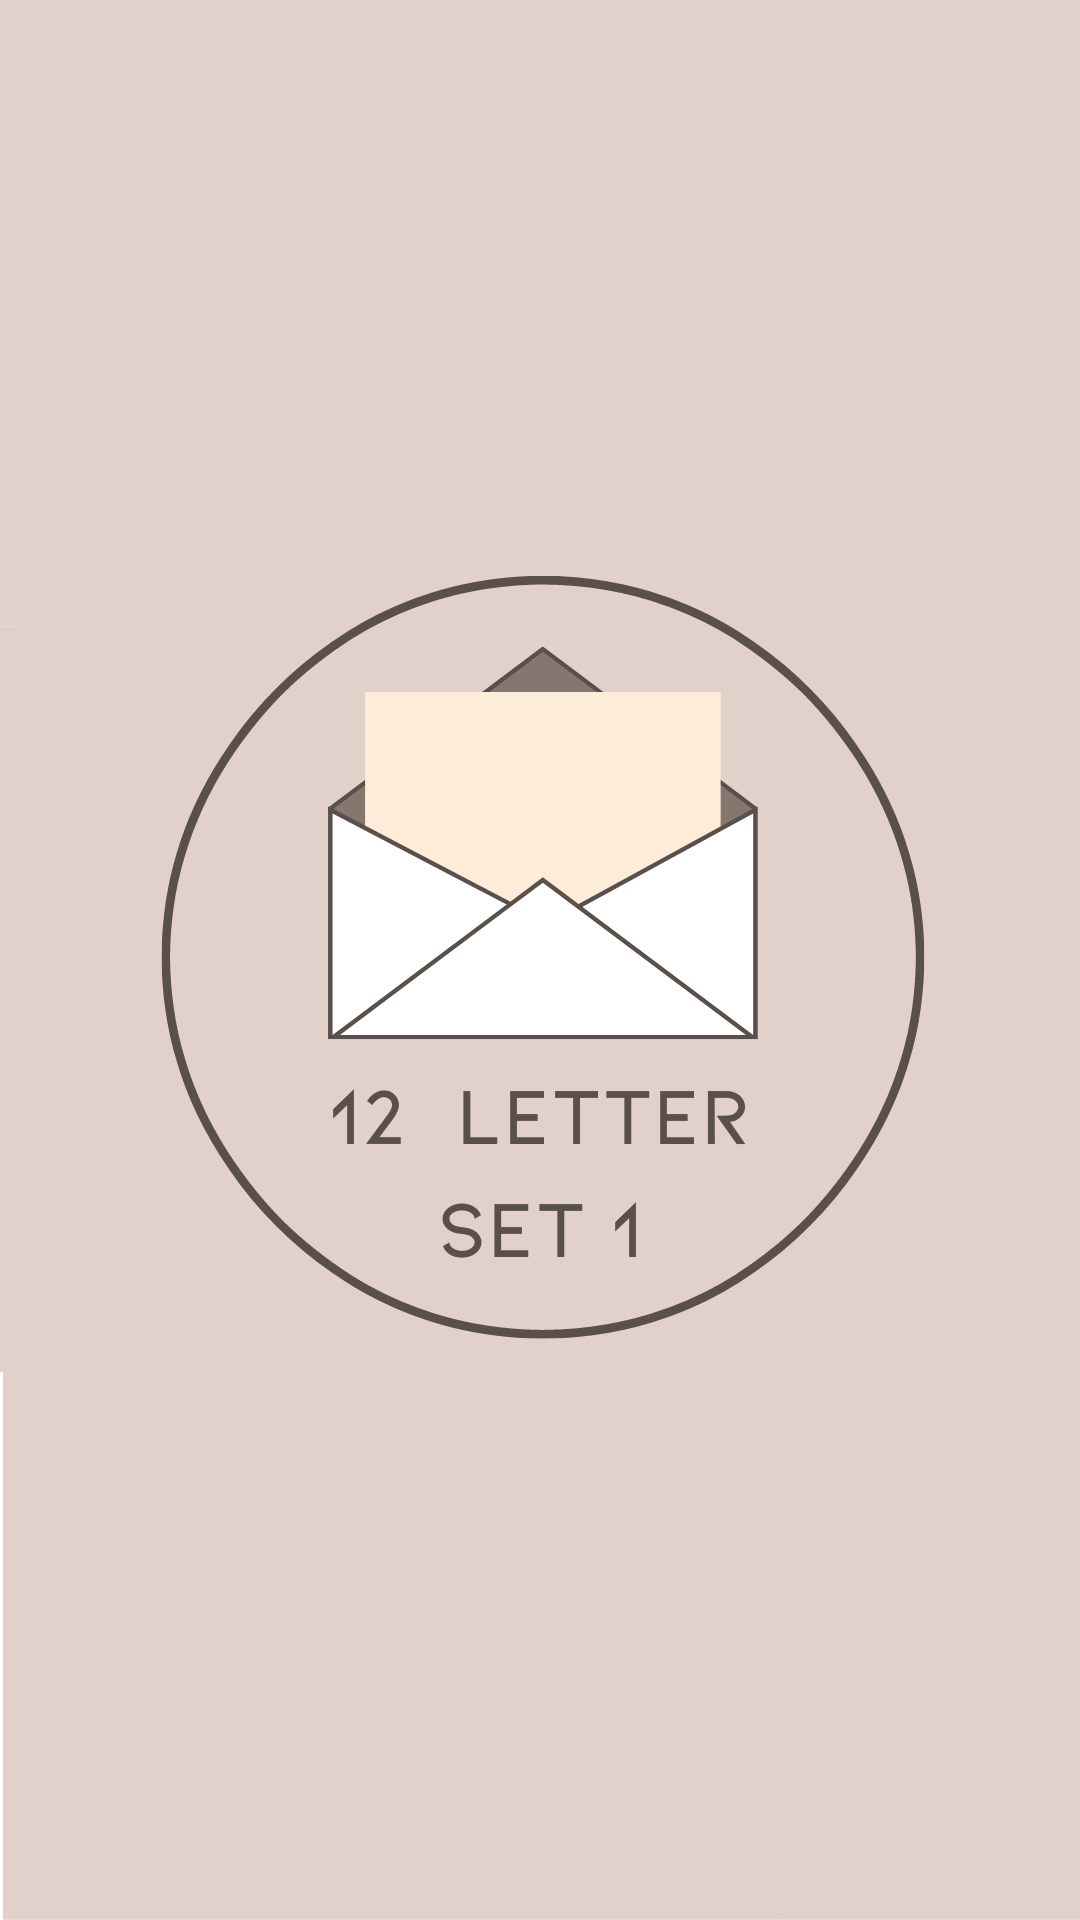 12 Letter Set 1